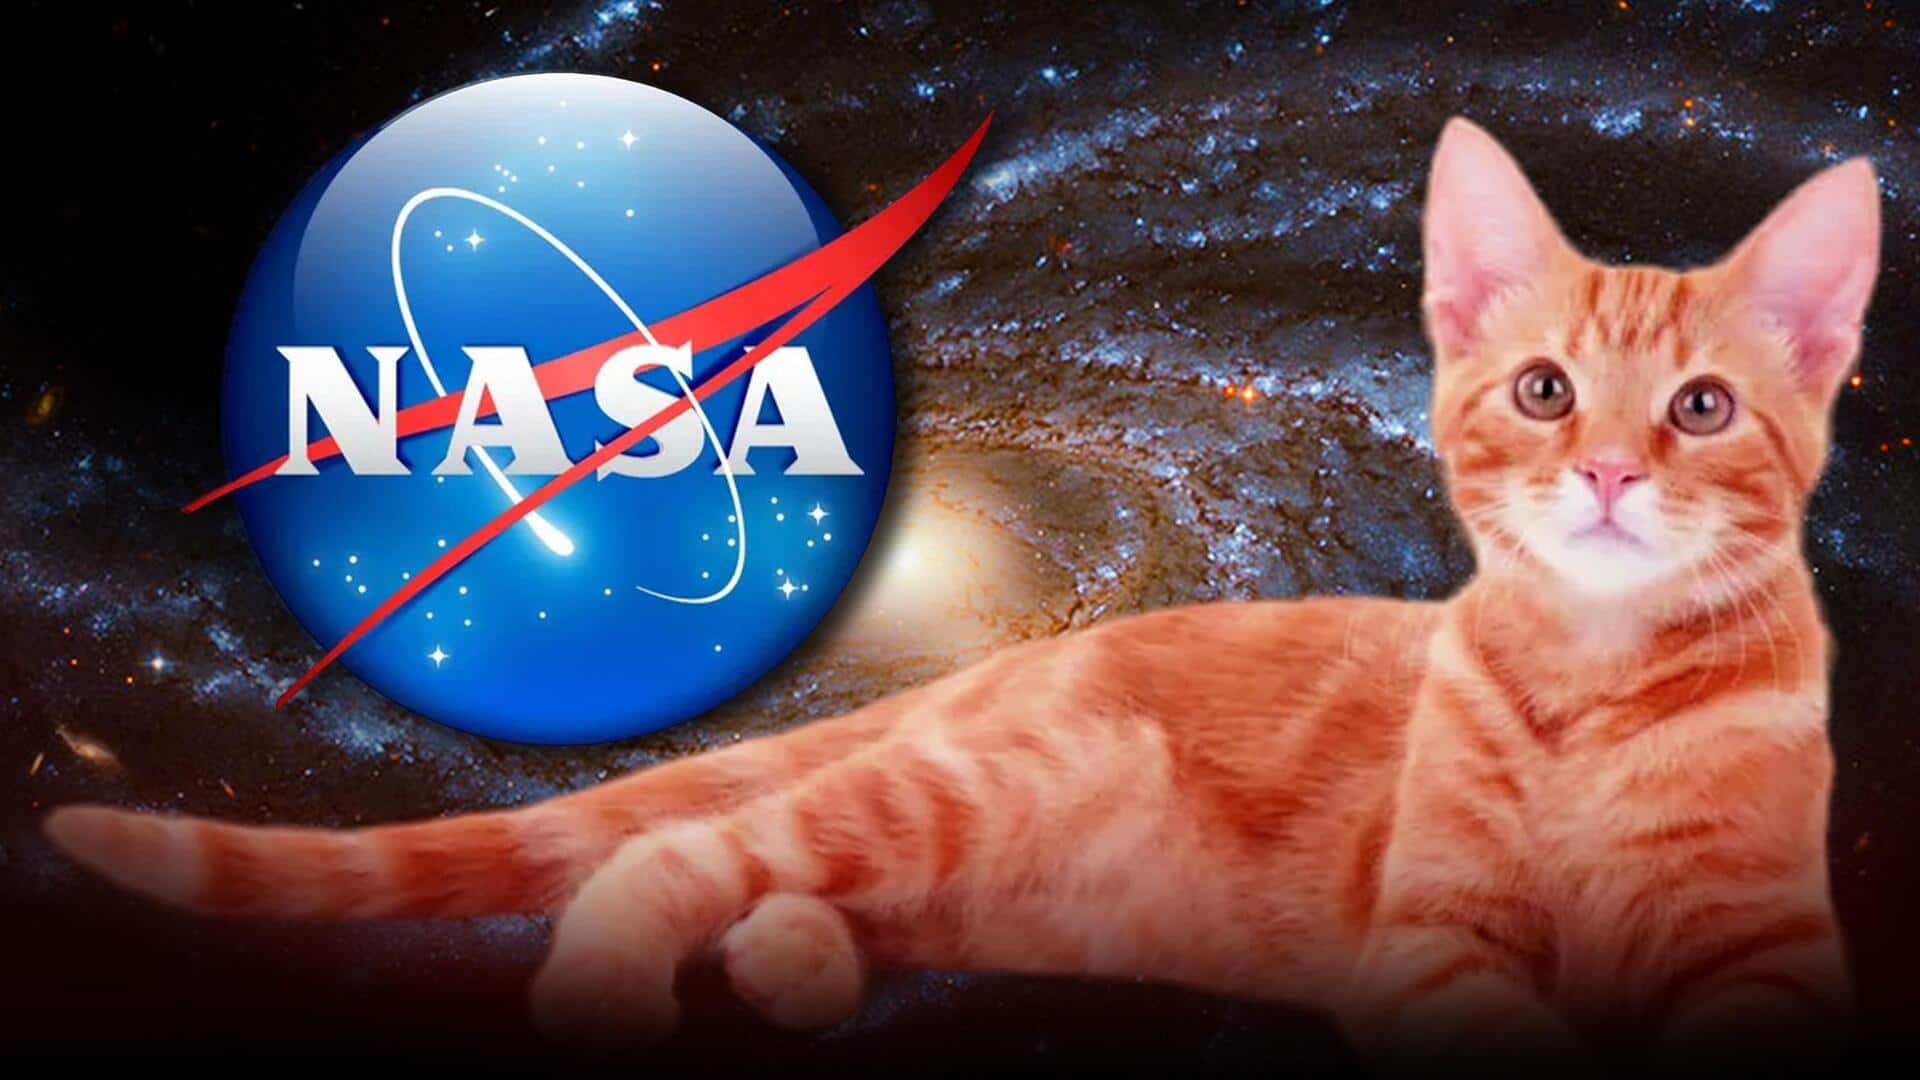 NASA : లేజర్‌ కమ్యూనికేషన్‌లో కీలక మైలురాయి.. అంతరిక్షం నుంచి తొలిసారి వీడియో ప్రసారం చేసిన నాసా